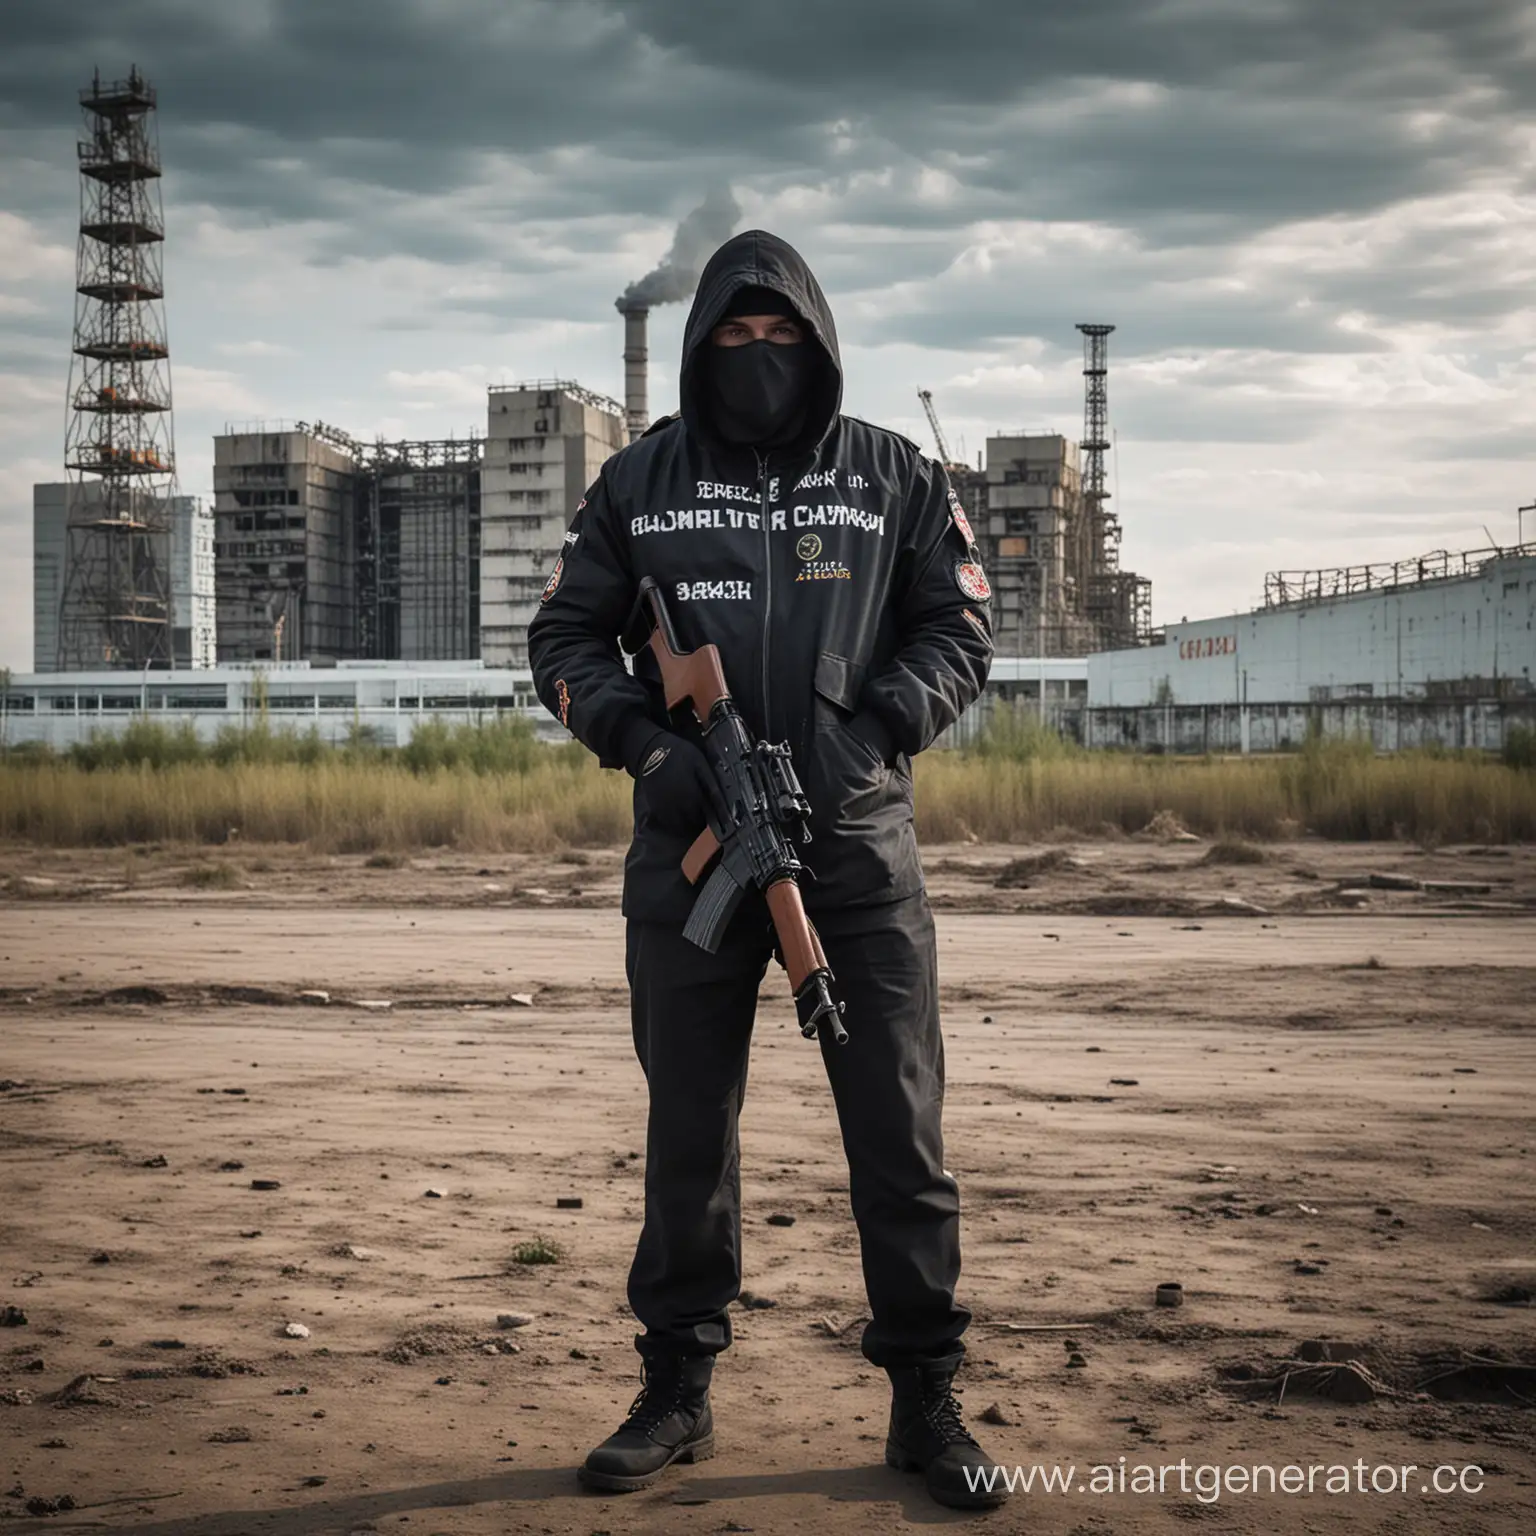 сталкер в черной куртке стоит на фоне ЧАЭС, с автоматом калашникова. На куртке надпись Crazy Unit